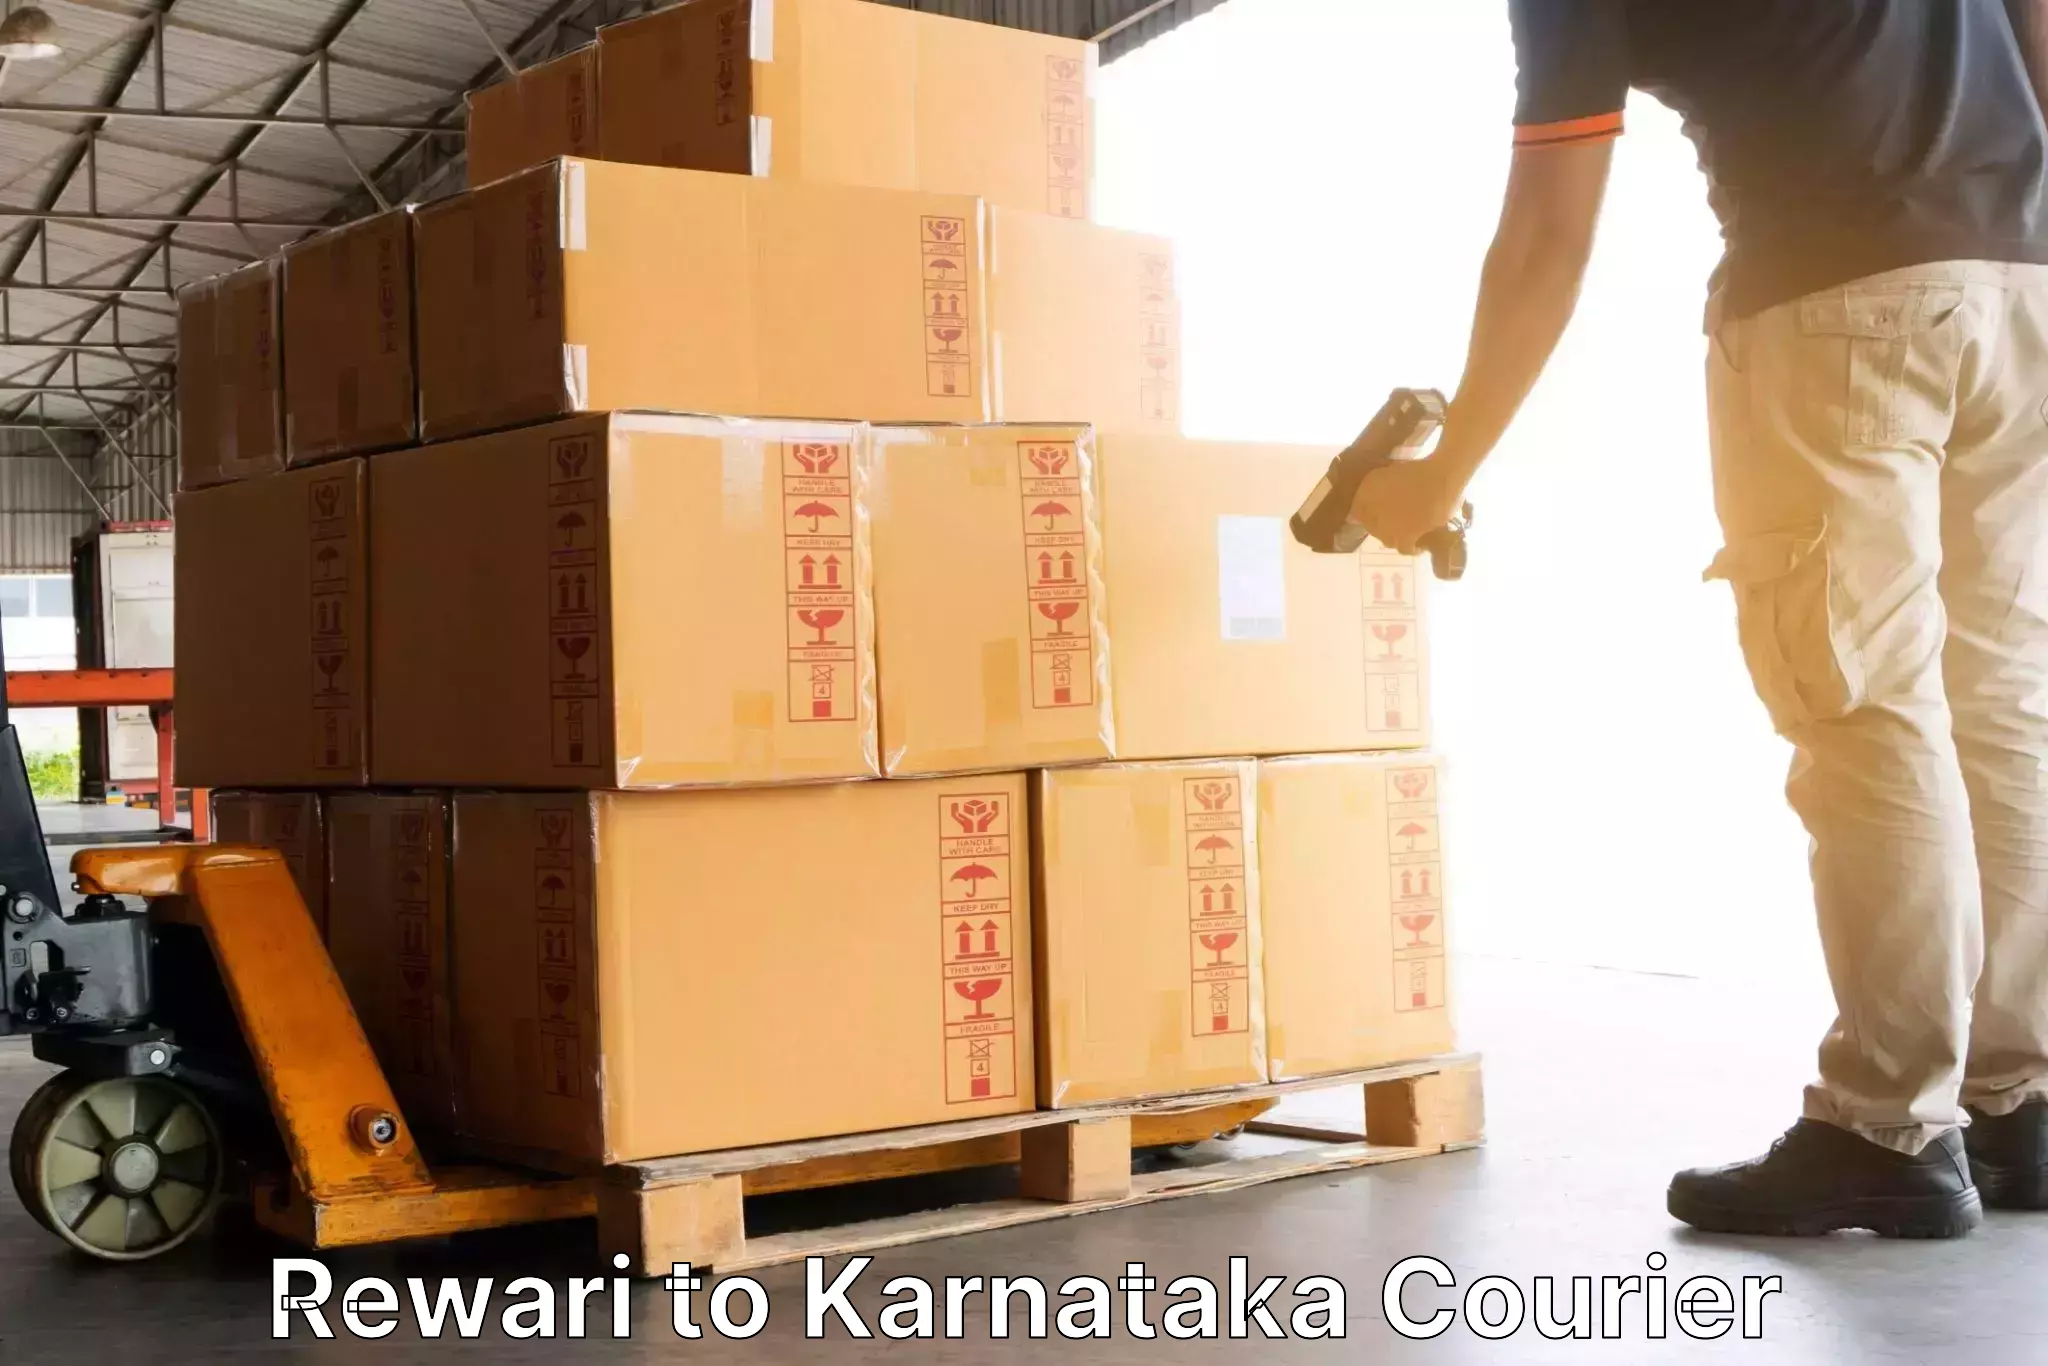 Courier service comparison Rewari to Chikkanayakanahalli